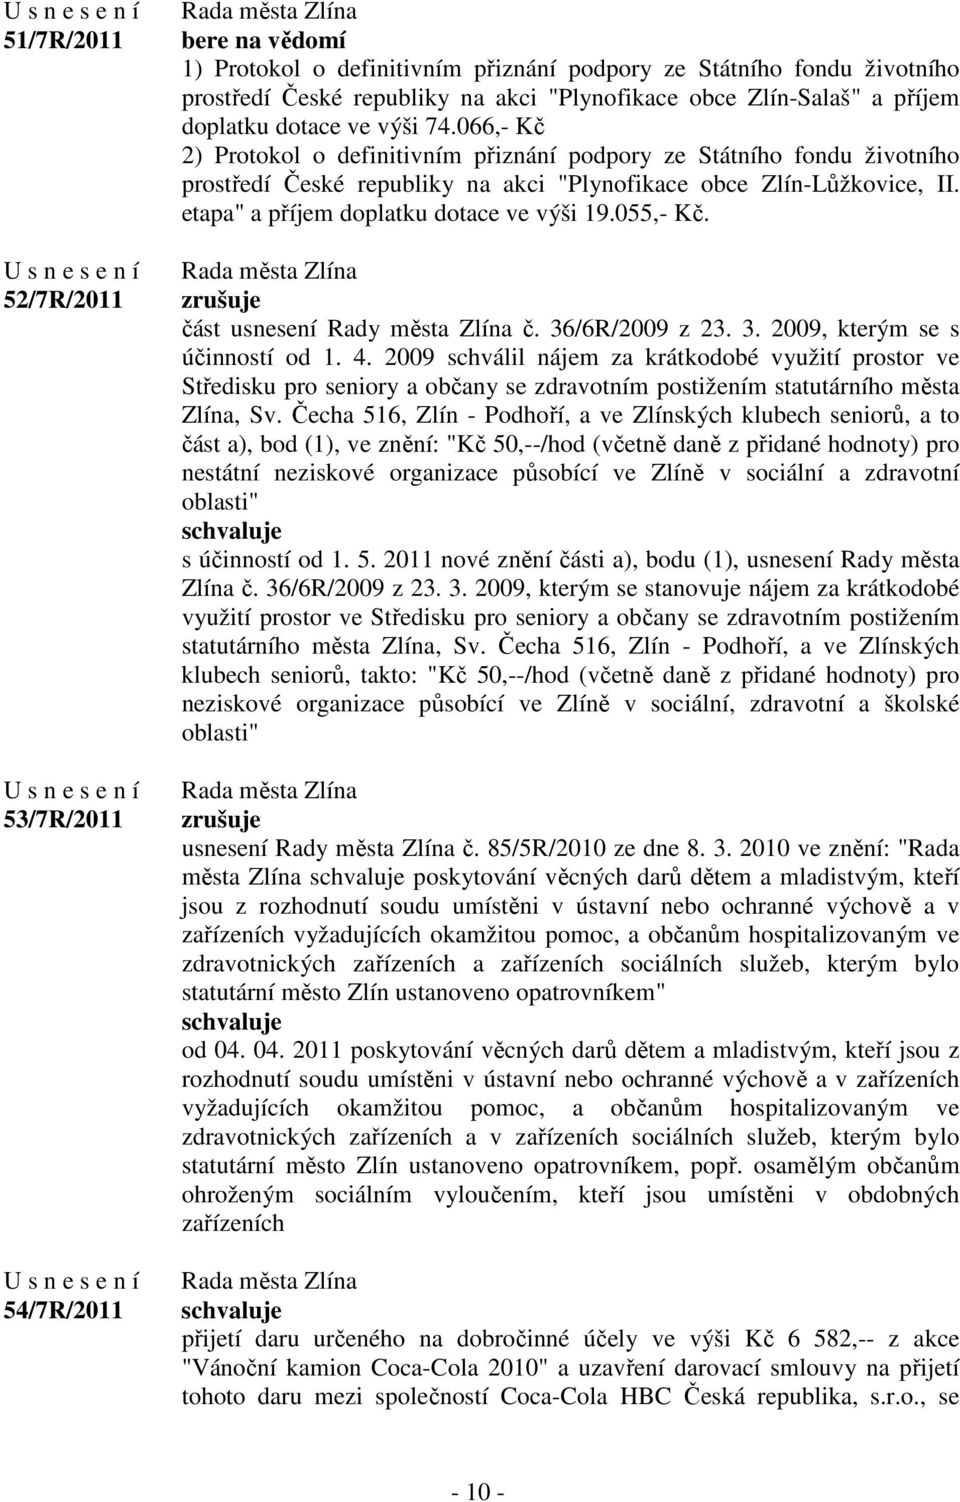 etapa" a příjem doplatku dotace ve výši 19.055,- Kč. zrušuje část usnesení Rady města Zlína č. 36/6R/2009 z 23. 3. 2009, kterým se s účinností od 1. 4.